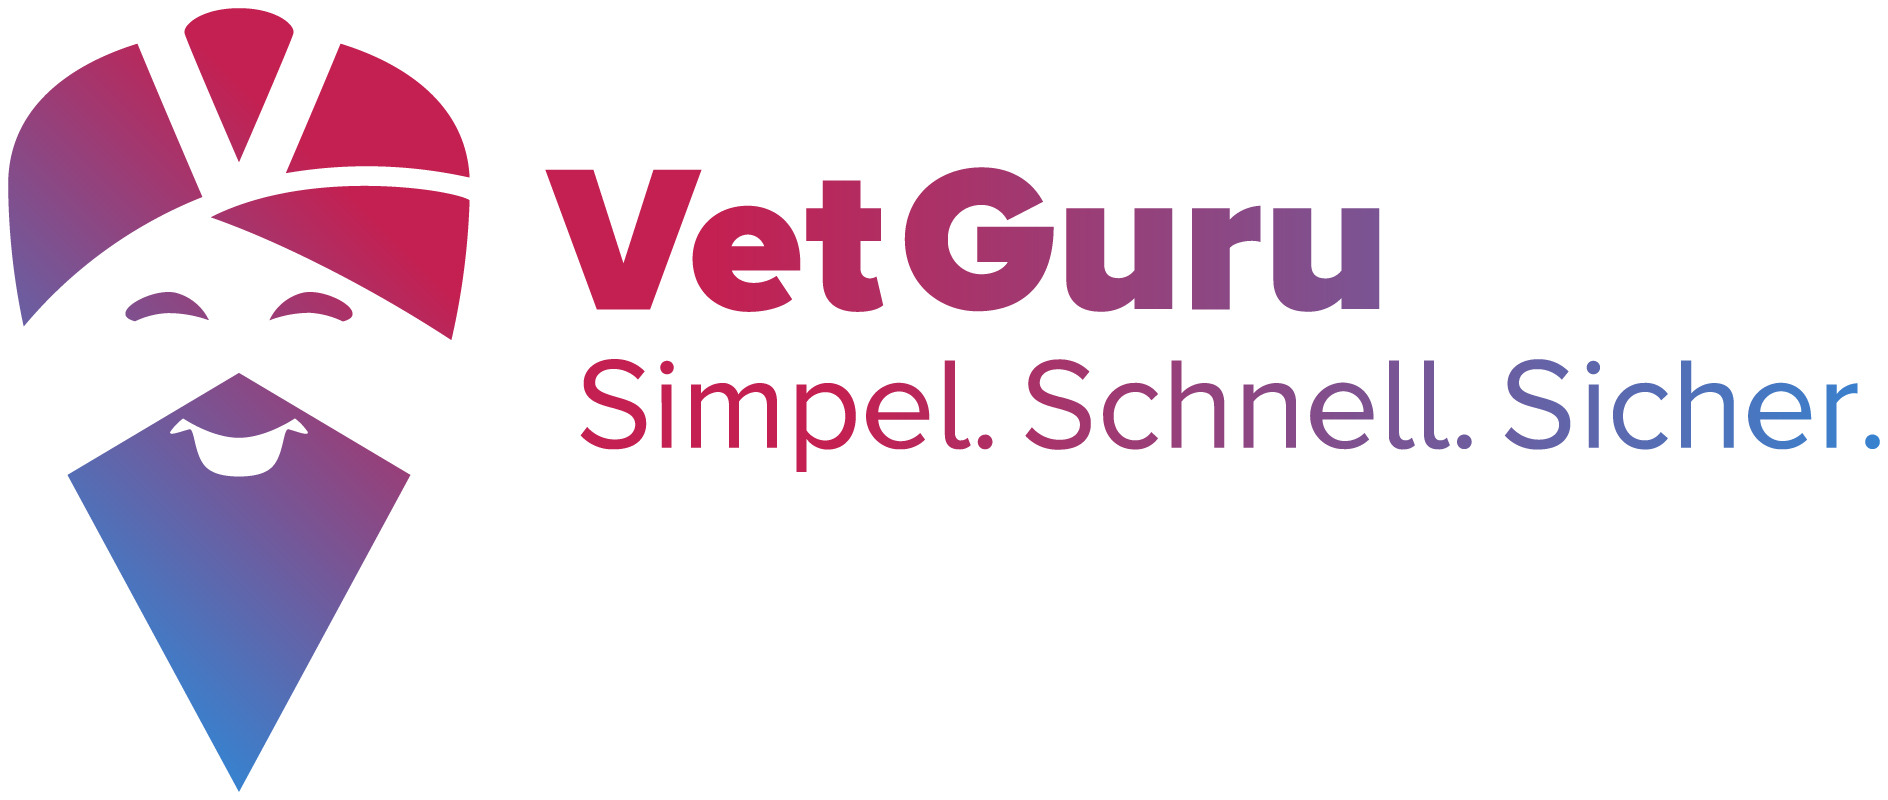 VetGuru GmbH
Telemedizin in der Tiermedizin